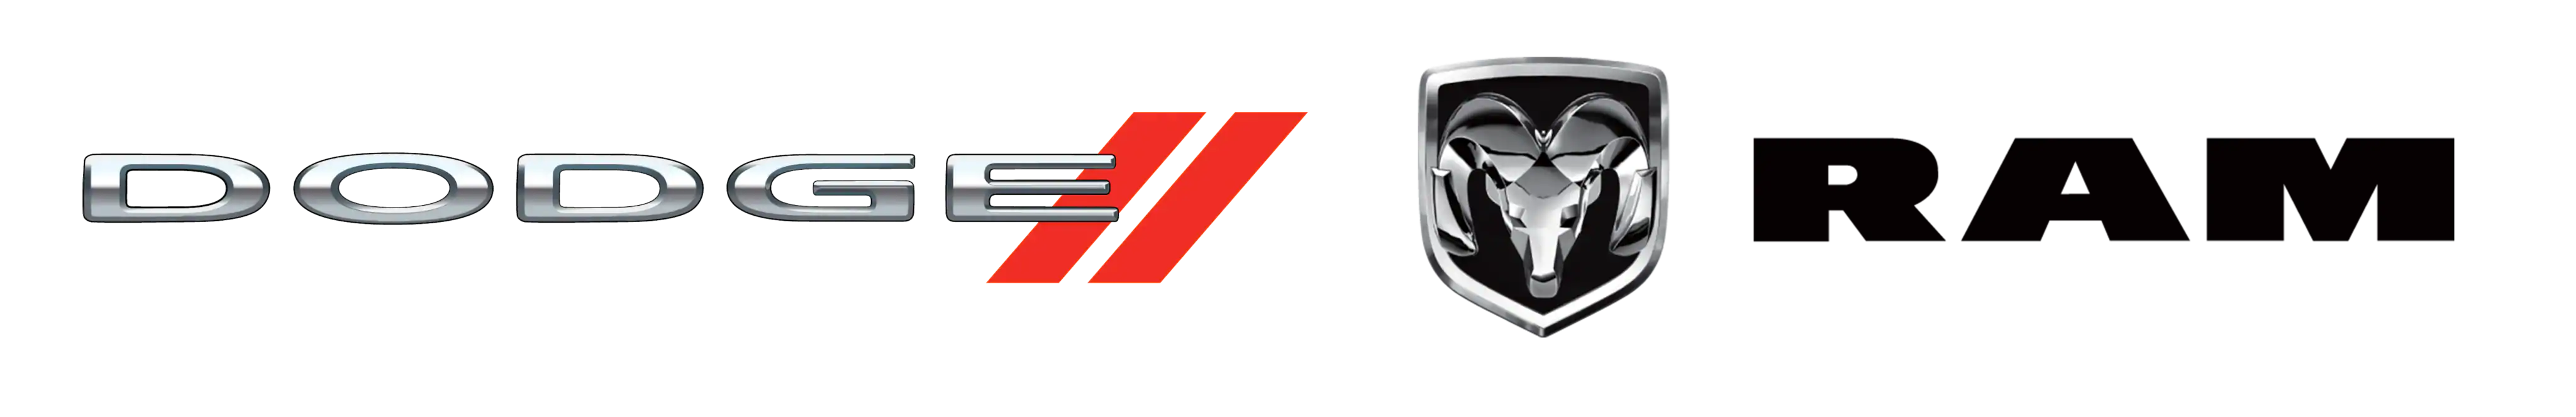 Dodge & Ram Logos | Monroeville Dodge Ram in Monroeville PA